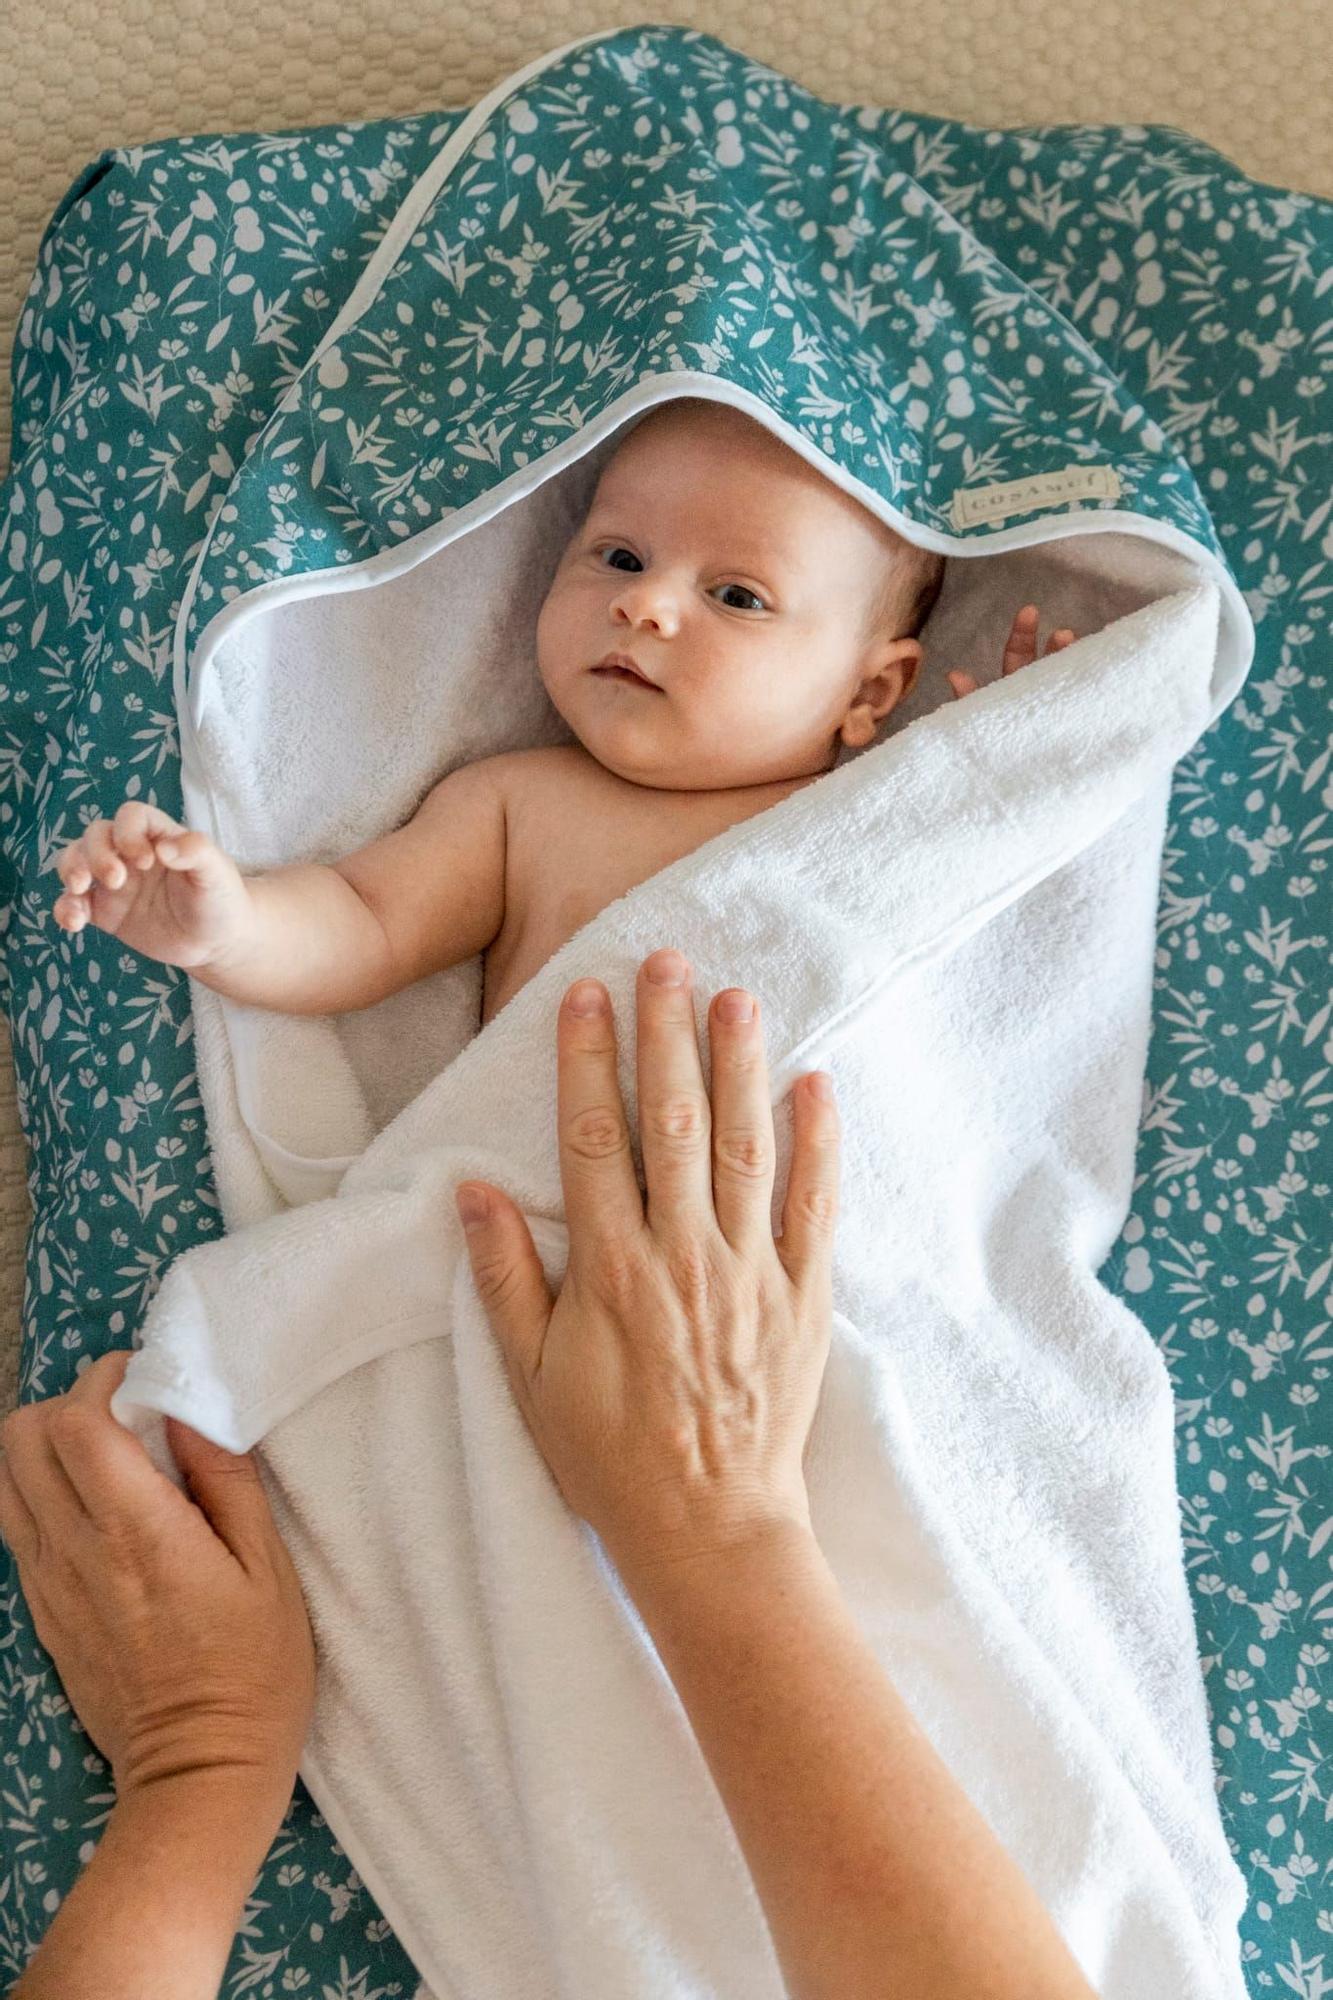 En COSAMUI podrás ver una gran variedad de arrullos o sacos de bebés para que se sientan seguros y calientes.